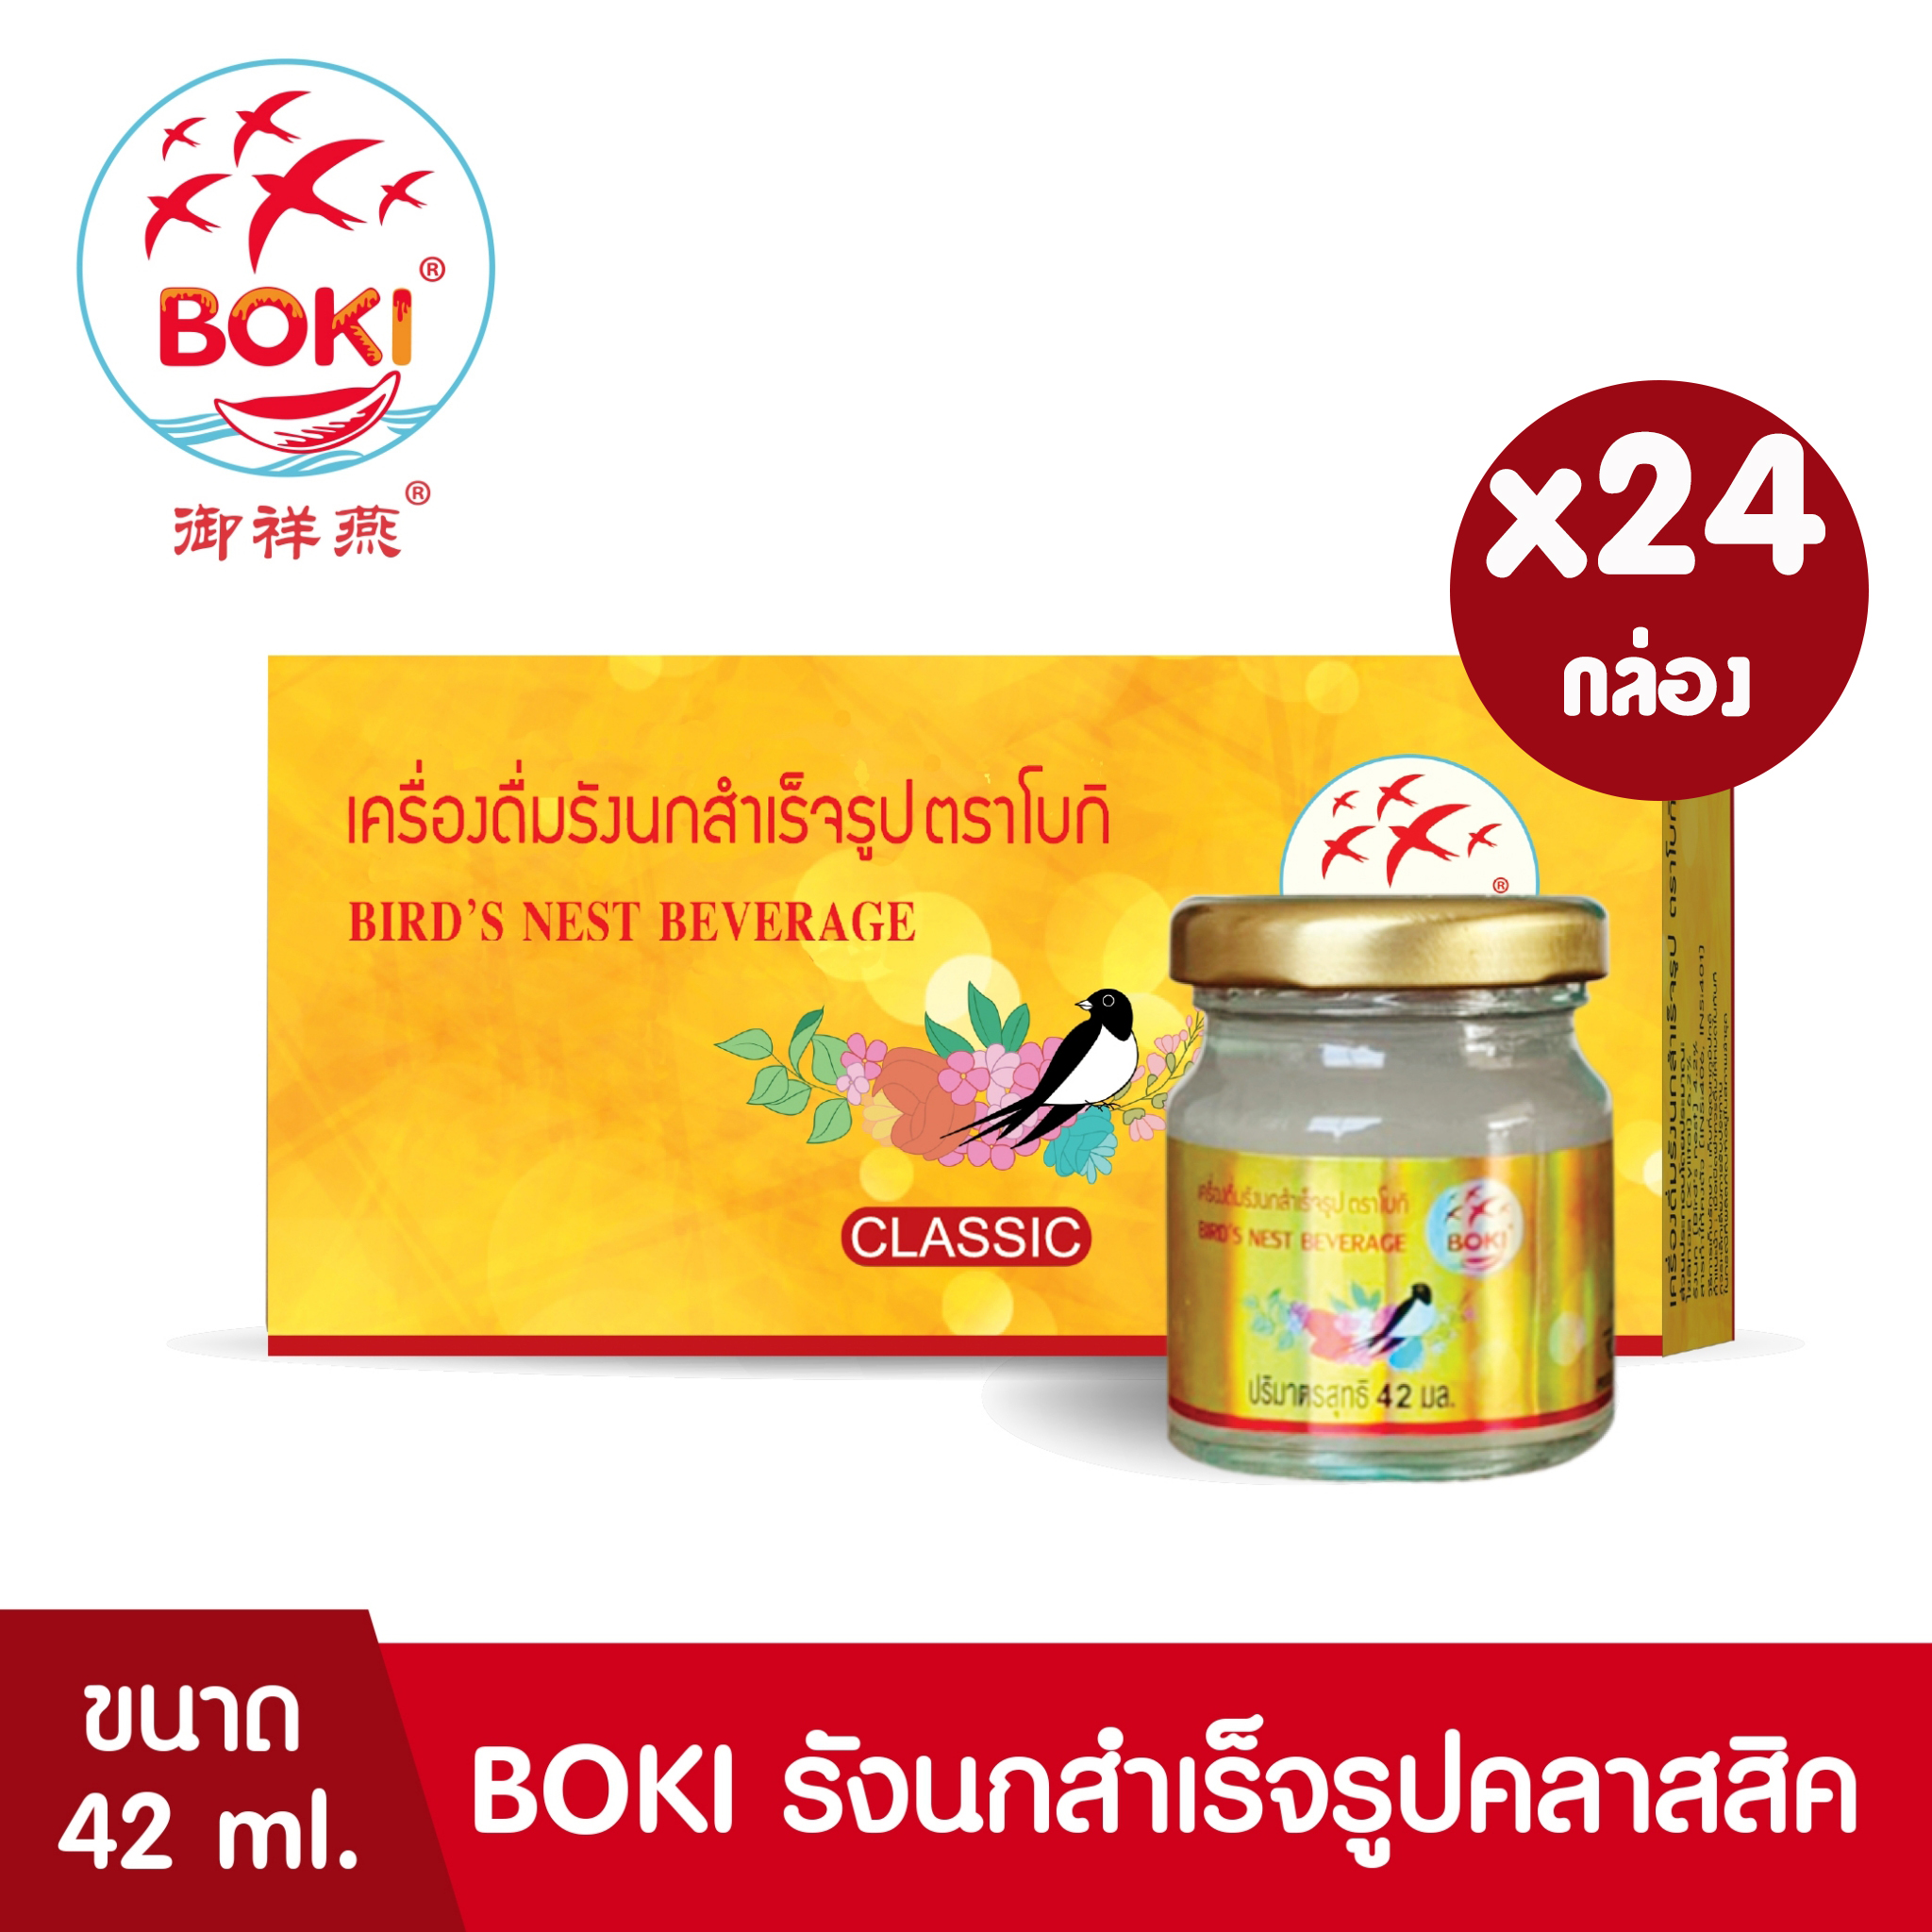 BOKI เครื่องดื่มรังนกสำเร็จรูป คลาสสิค (42ml x 3) 24 กล่อง รังนกเพื่อสุขภาพ Bird’s nest beverage Classic